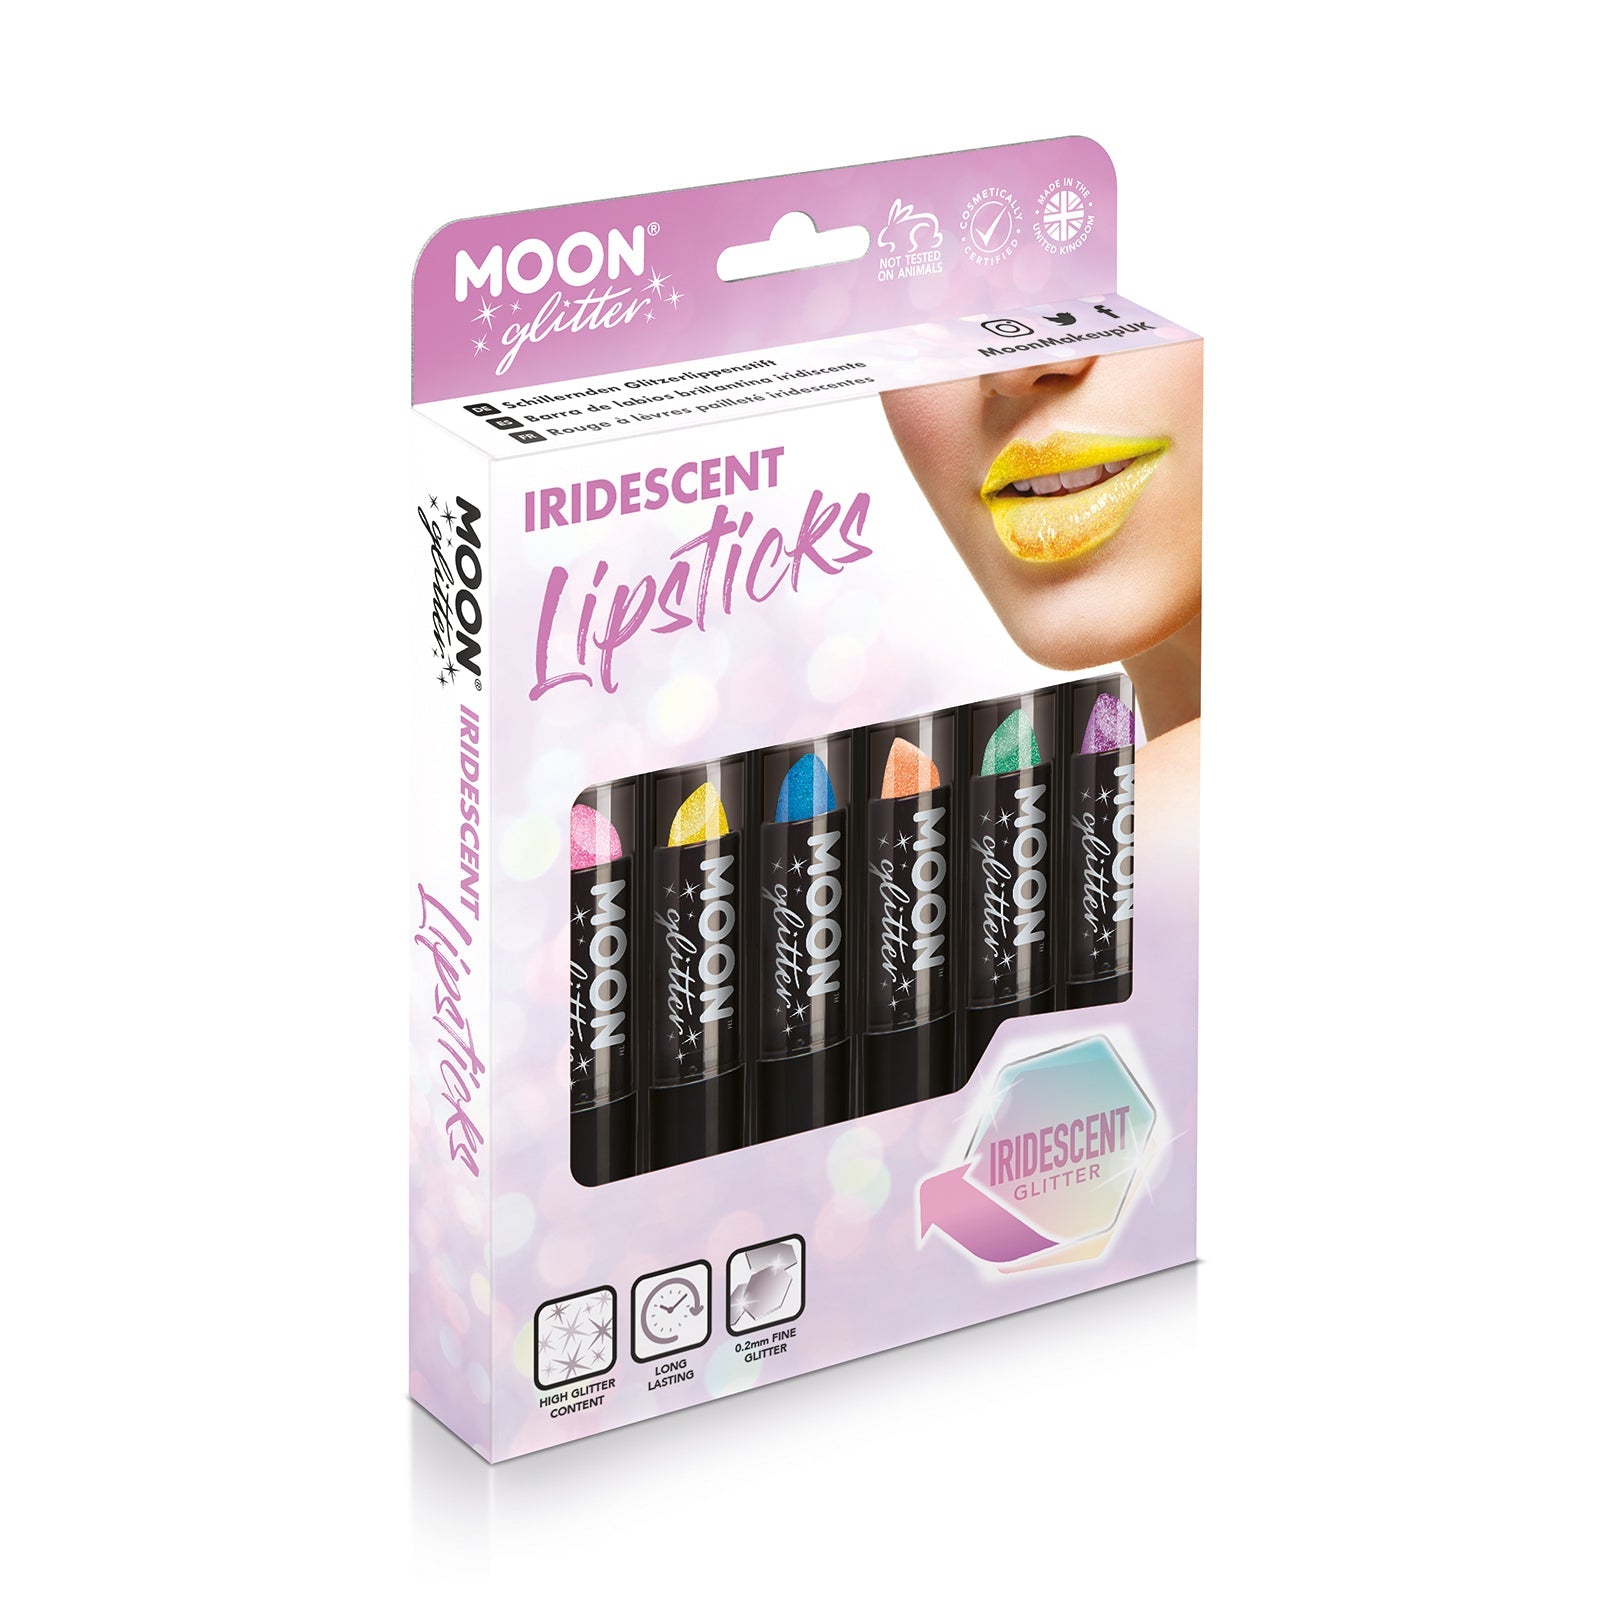 Iridescent Glitter Lipstick Boxset - 6 Lipstick. Cosmetically certified, FDA & Health Canada compliant and cruelty free.